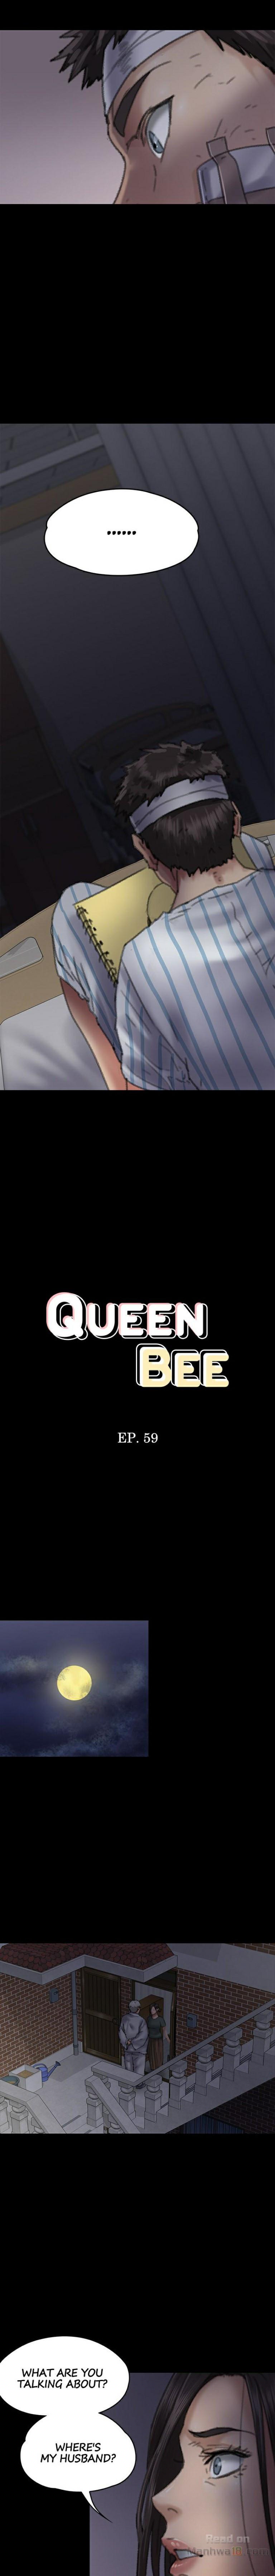 Queen Bee/Landlord's Little Girl - Ami sex scenes compilation 39 - 68 104